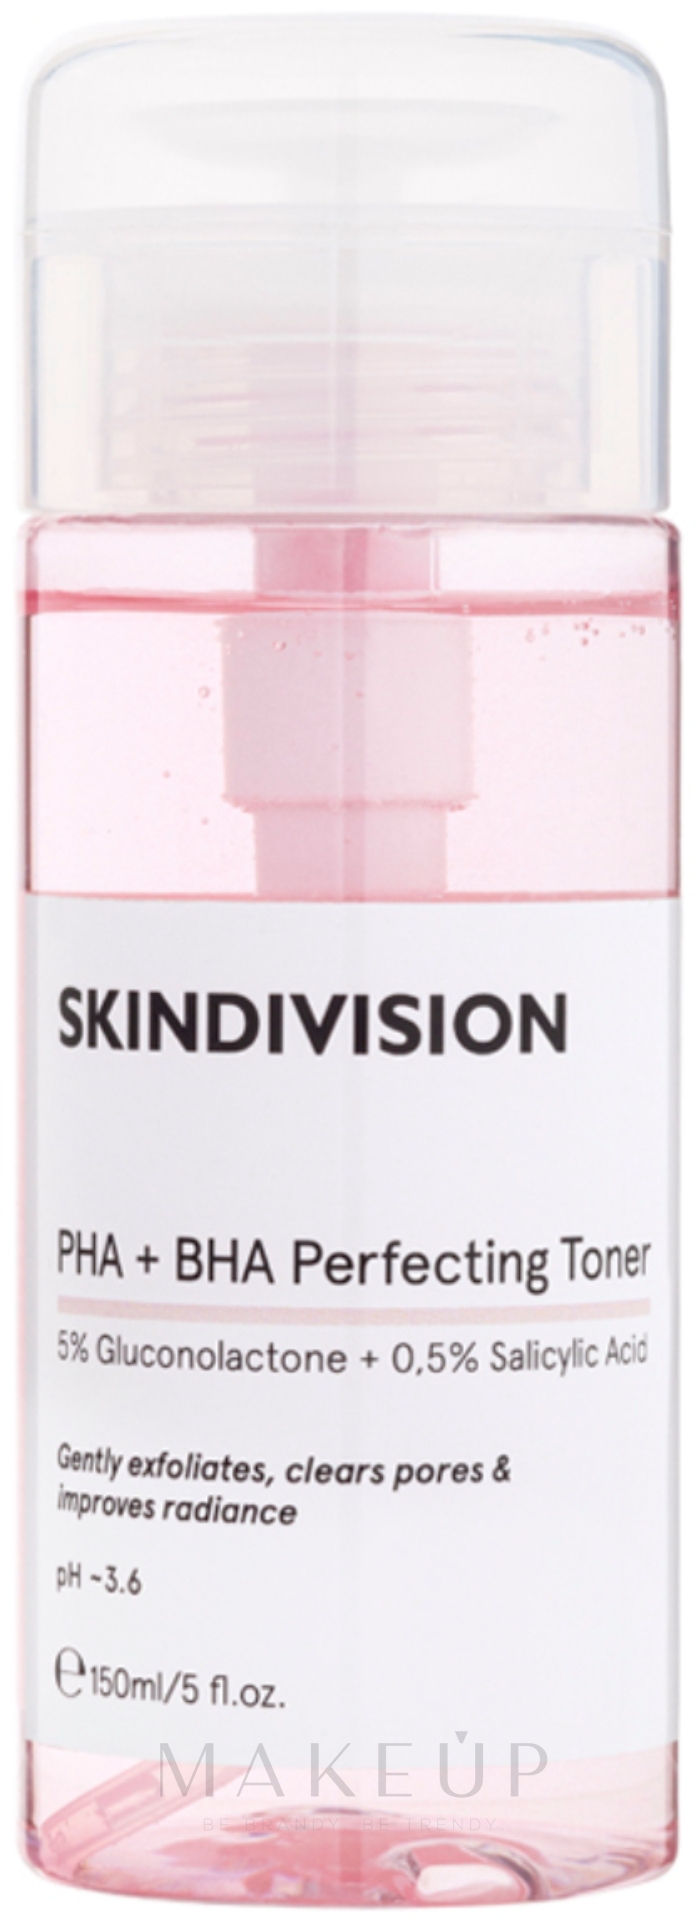 Exfolierendes und porenreinigendes Gesichtstonikum mit 5% Gluconolacton und 0,5% Salizylsäure für ebenmäßigen Teint - SkinDivision PHA + BHA Perfecting Toner — Foto 150 ml